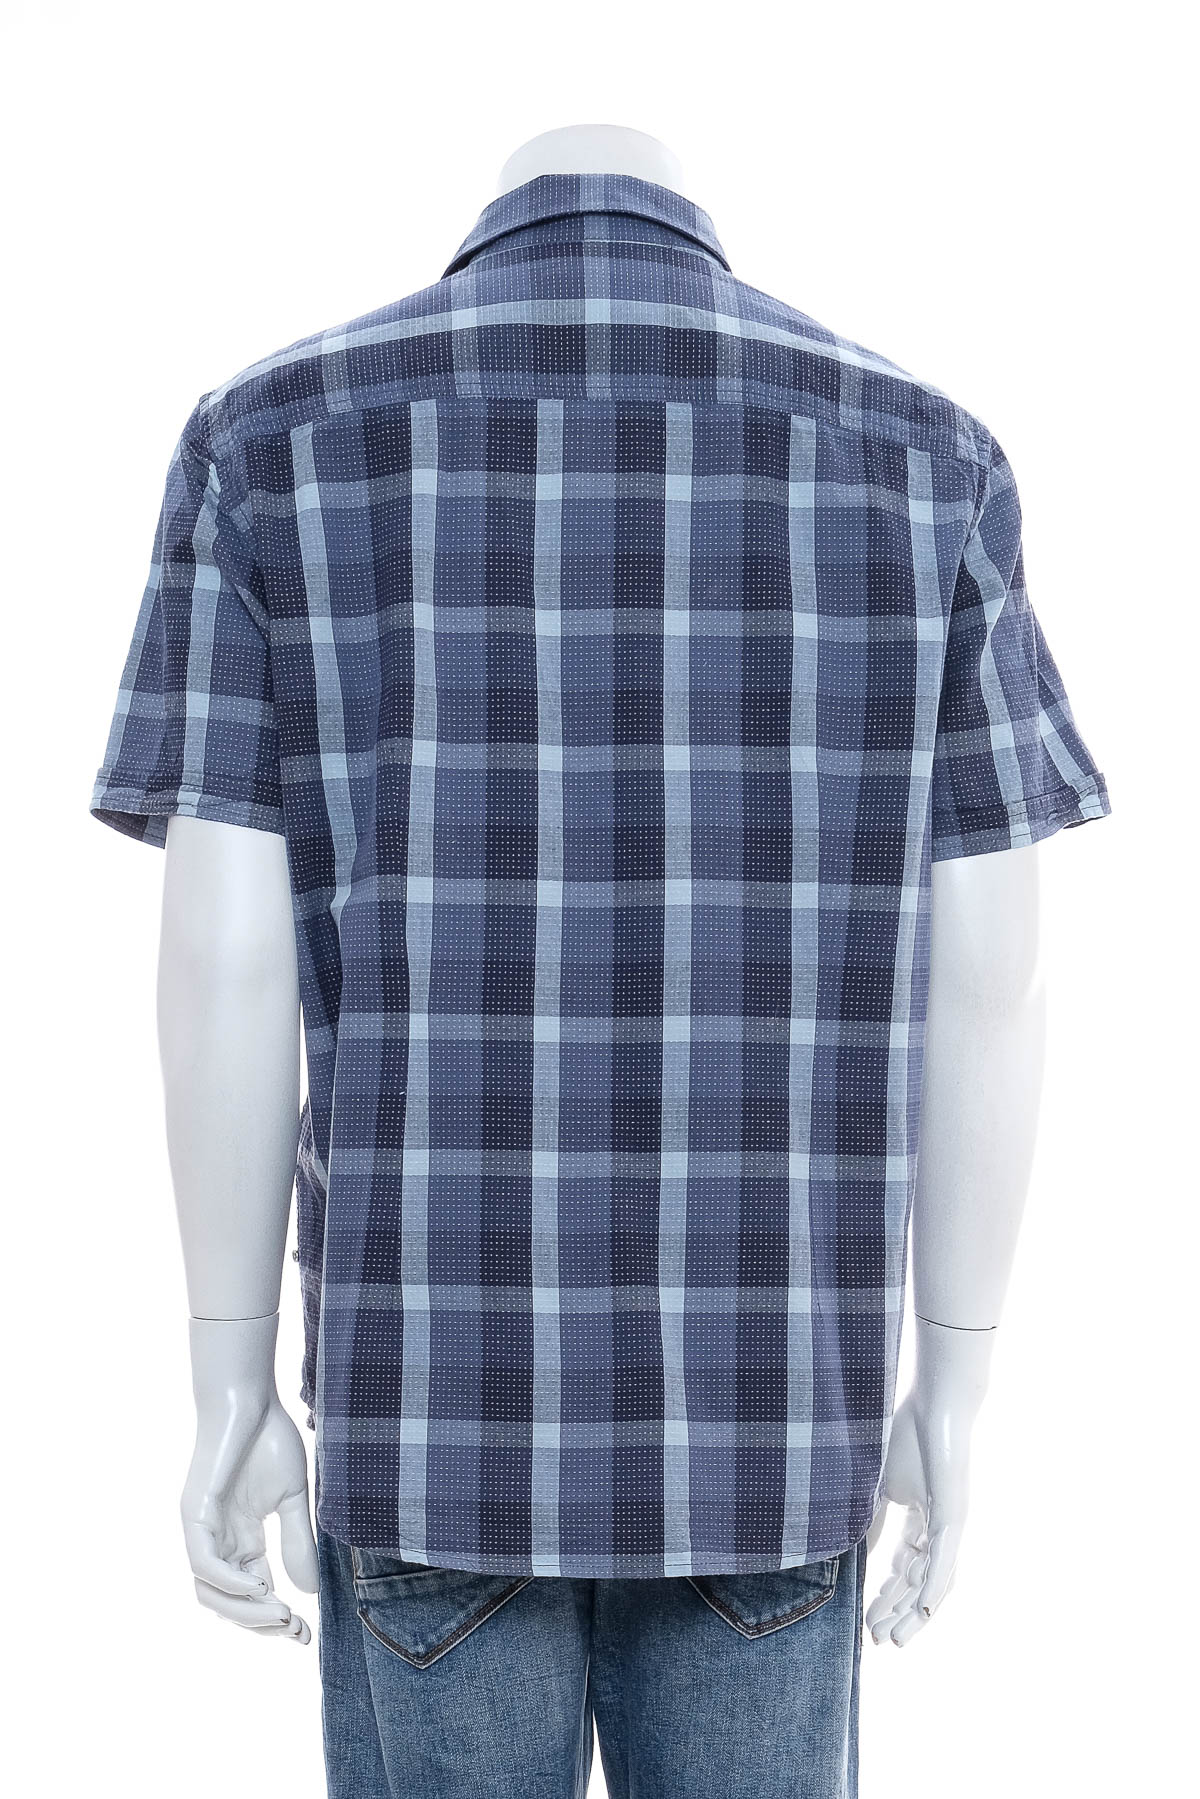 Ανδρικό πουκάμισο - Charles Vogele - 1